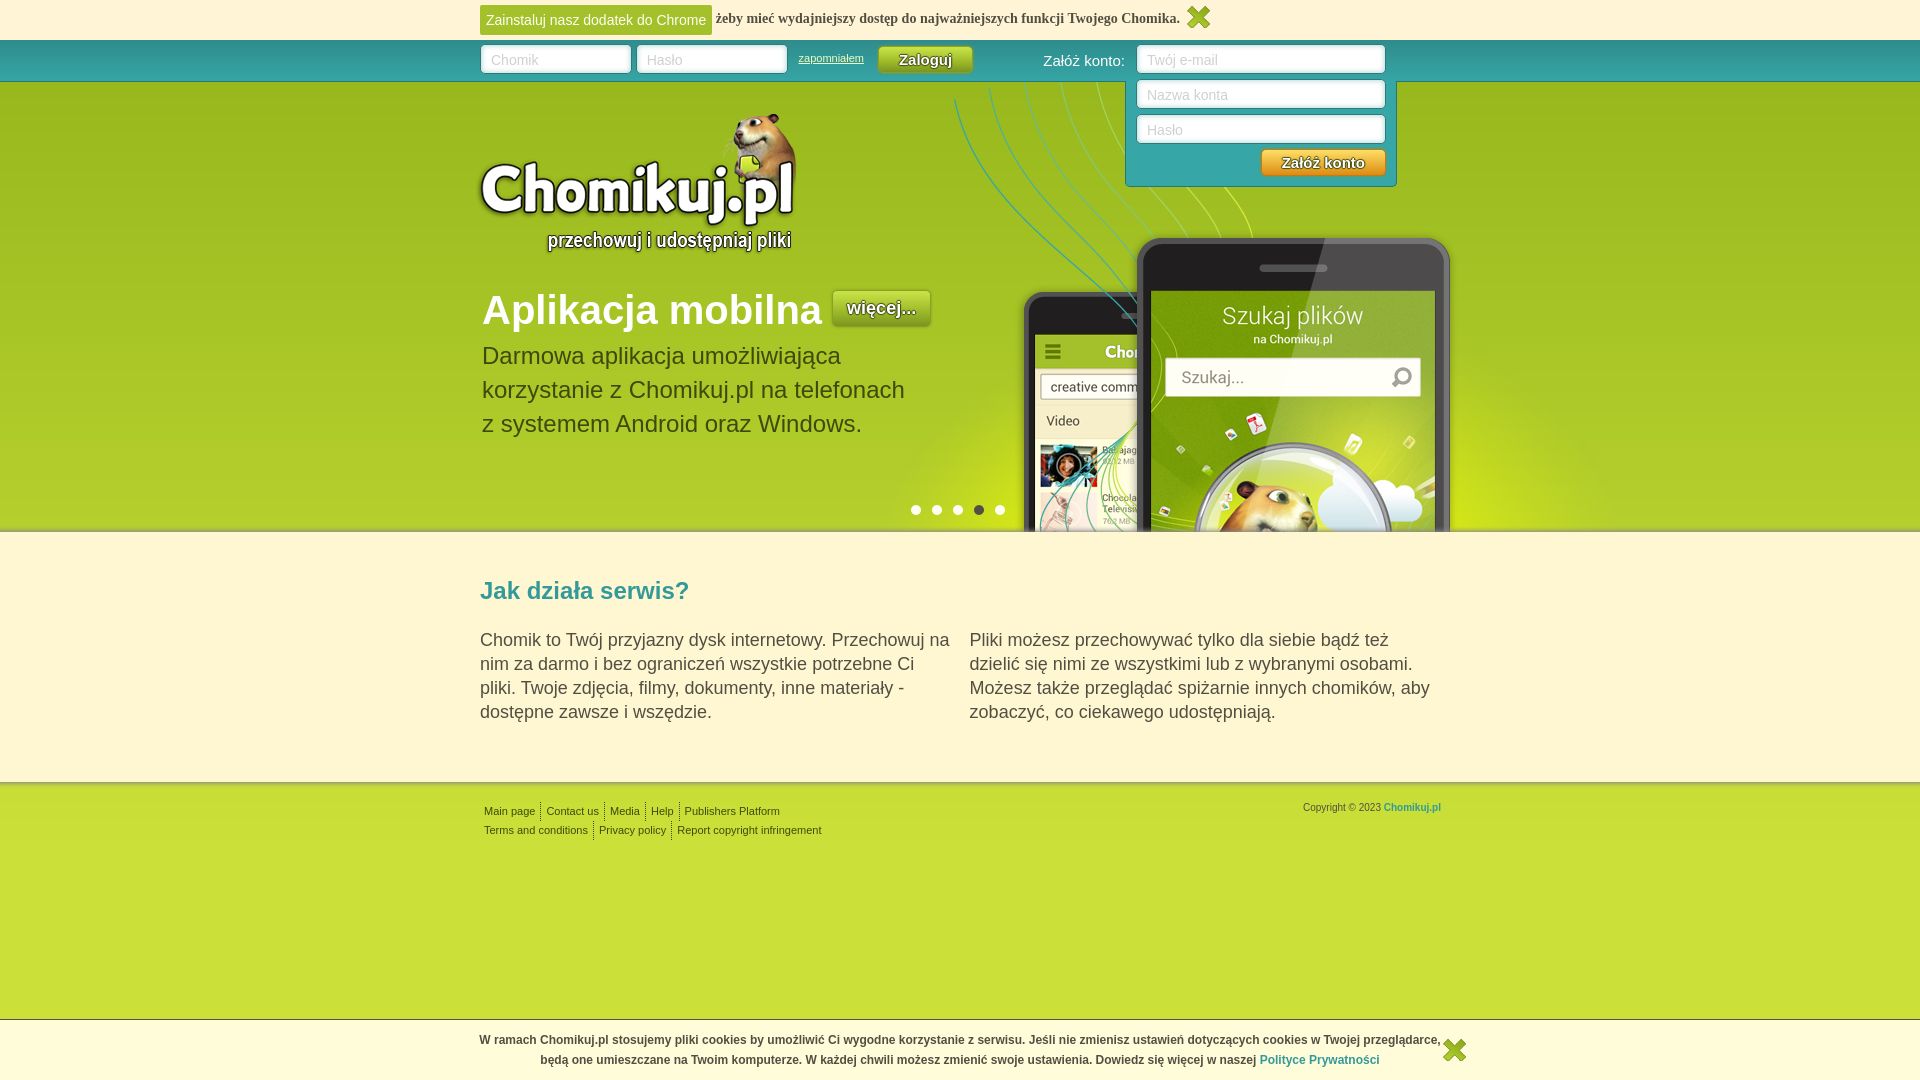 网站状态 chomikuj.pl 是  在线的